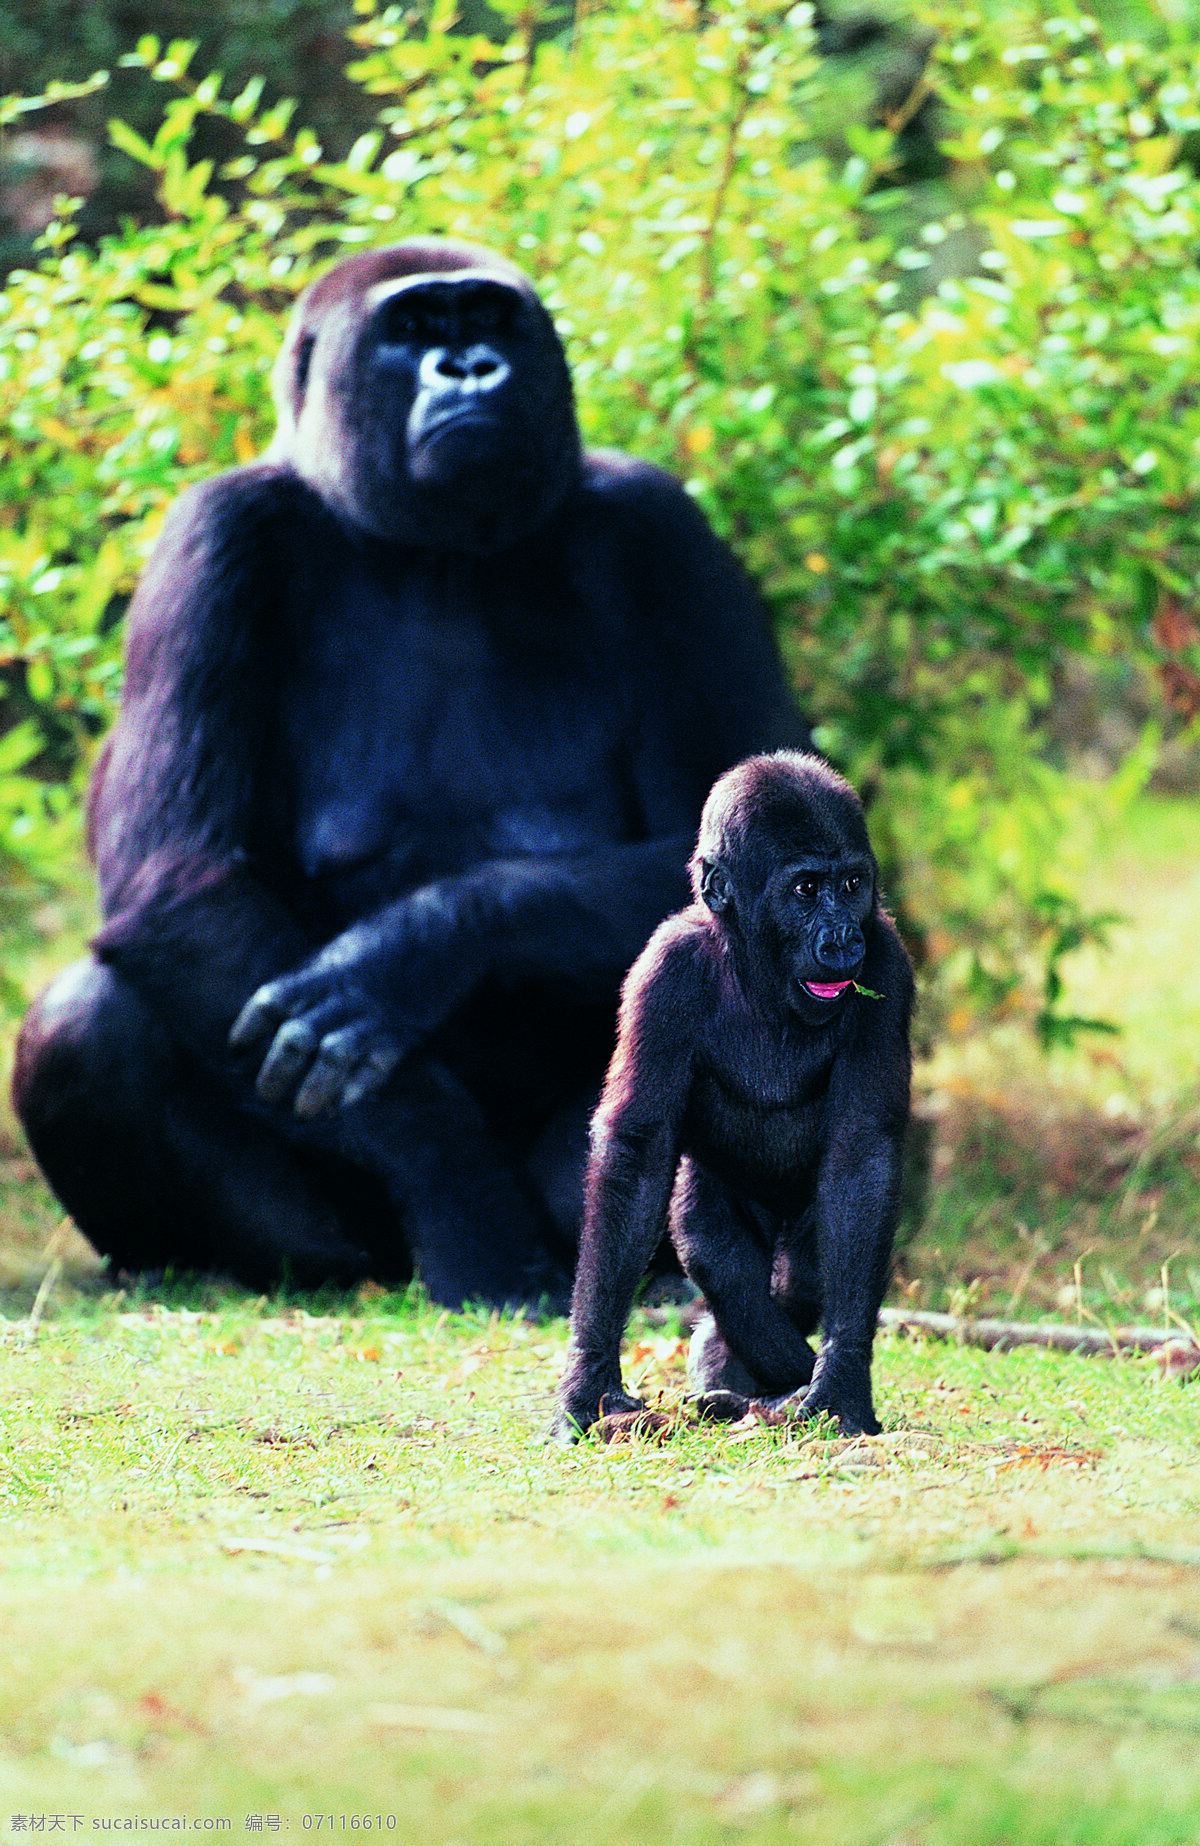 大猩猩 小 猩猩 动物 野生动物 草地 陆地动物 生物世界